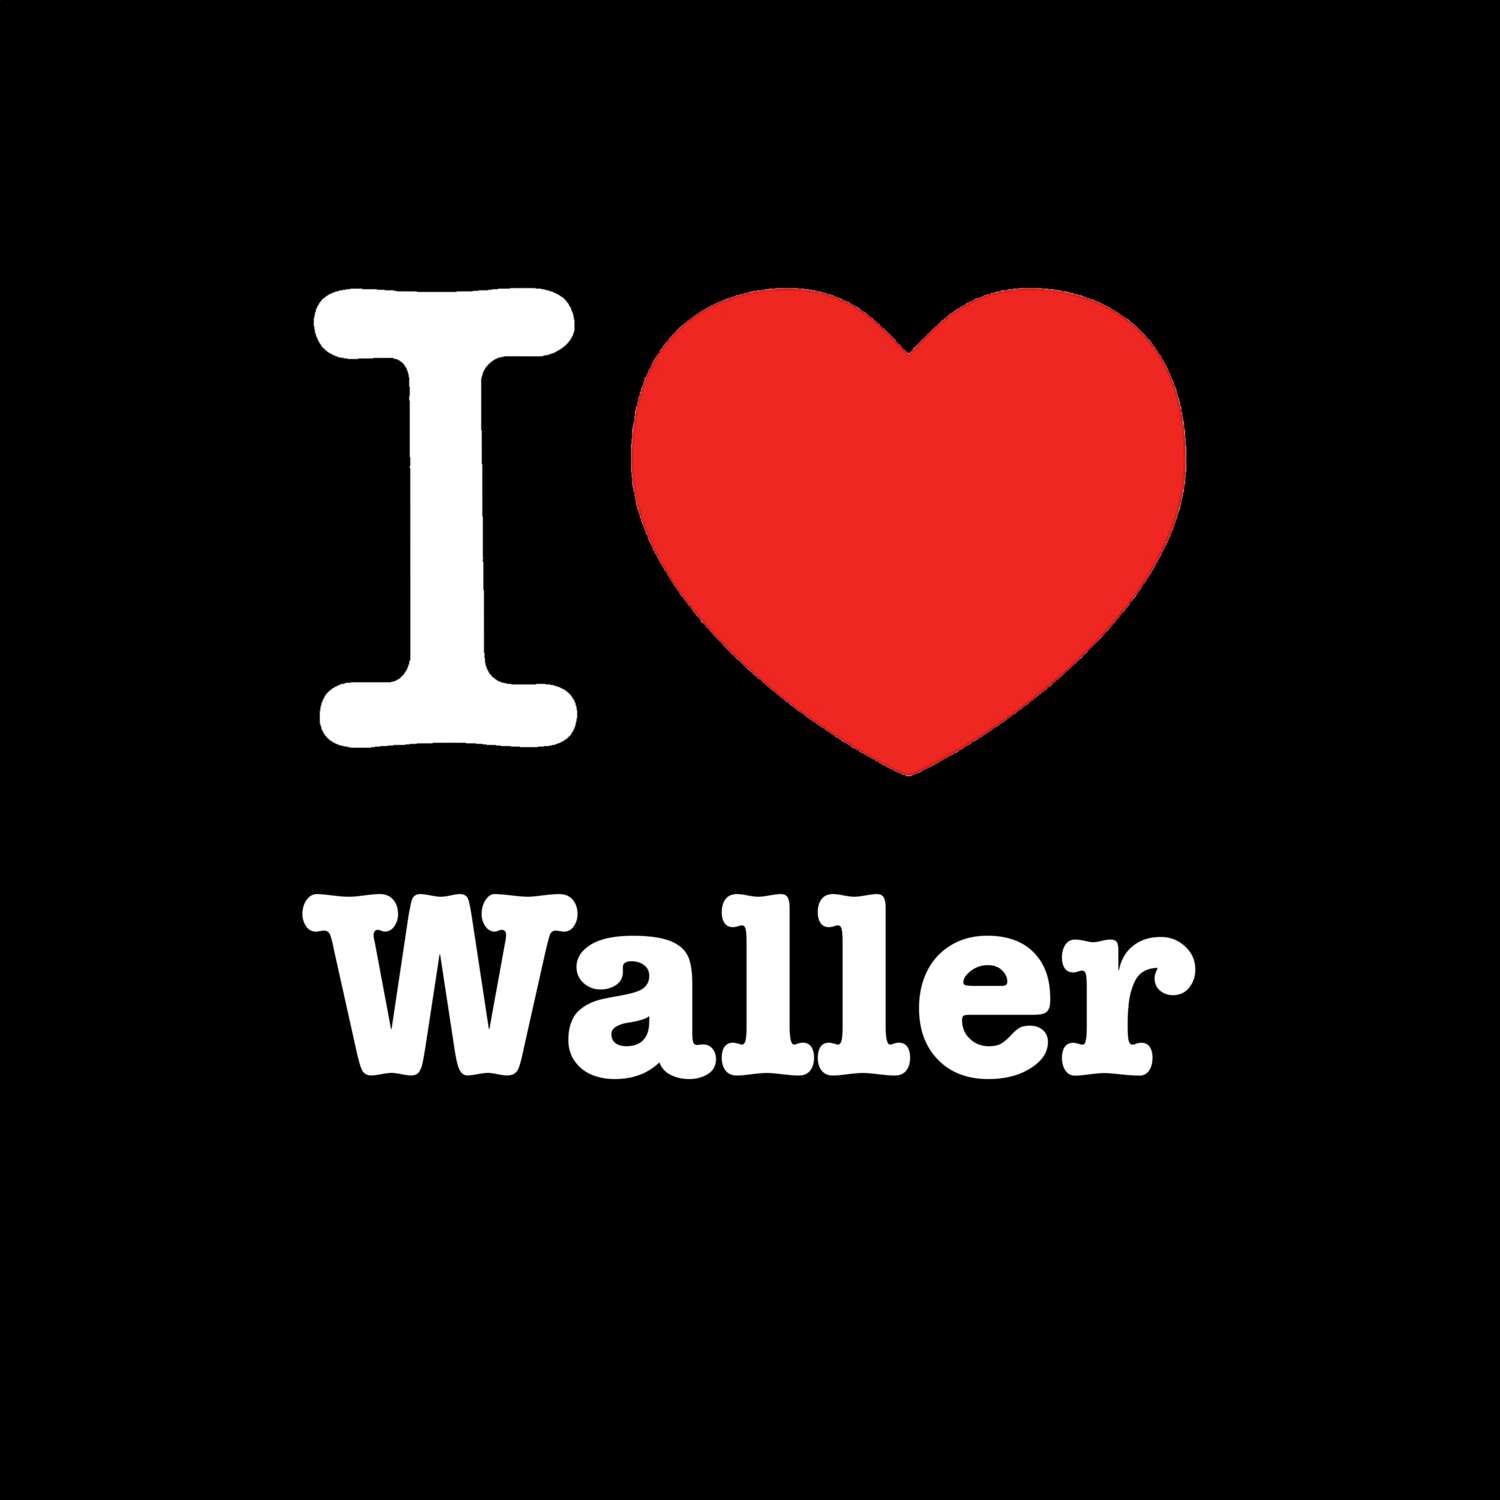 Waller T-Shirt »I love«